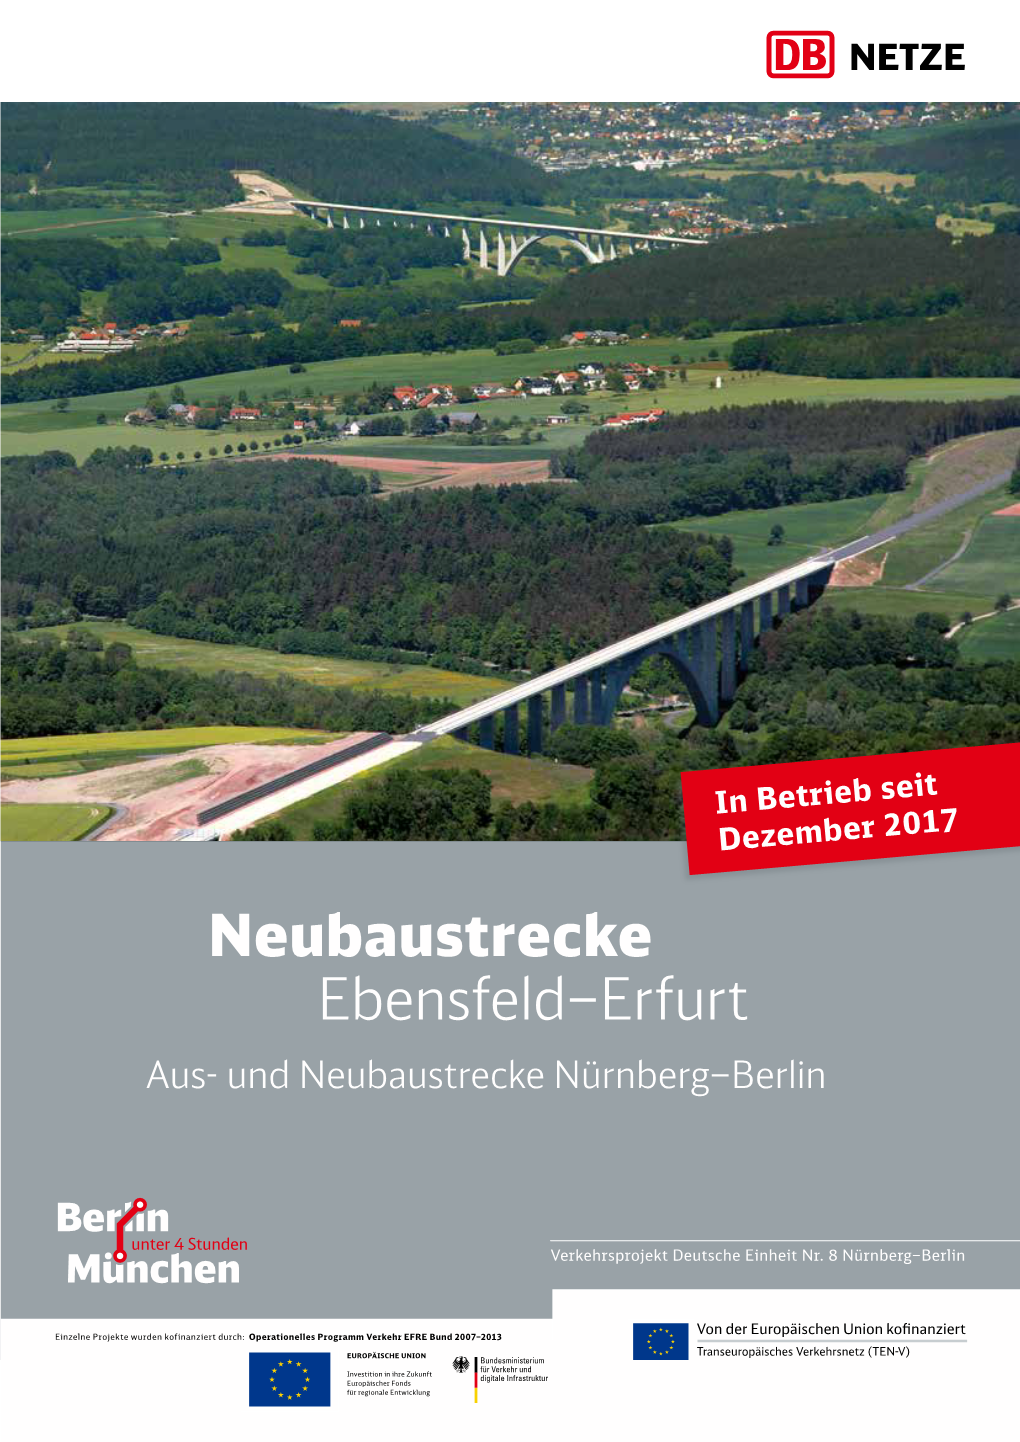 Neubaustrecke Ebensfeld–Erfurt (VDE 8.1) Ist Teil Ebensfeld Dieses Projekts